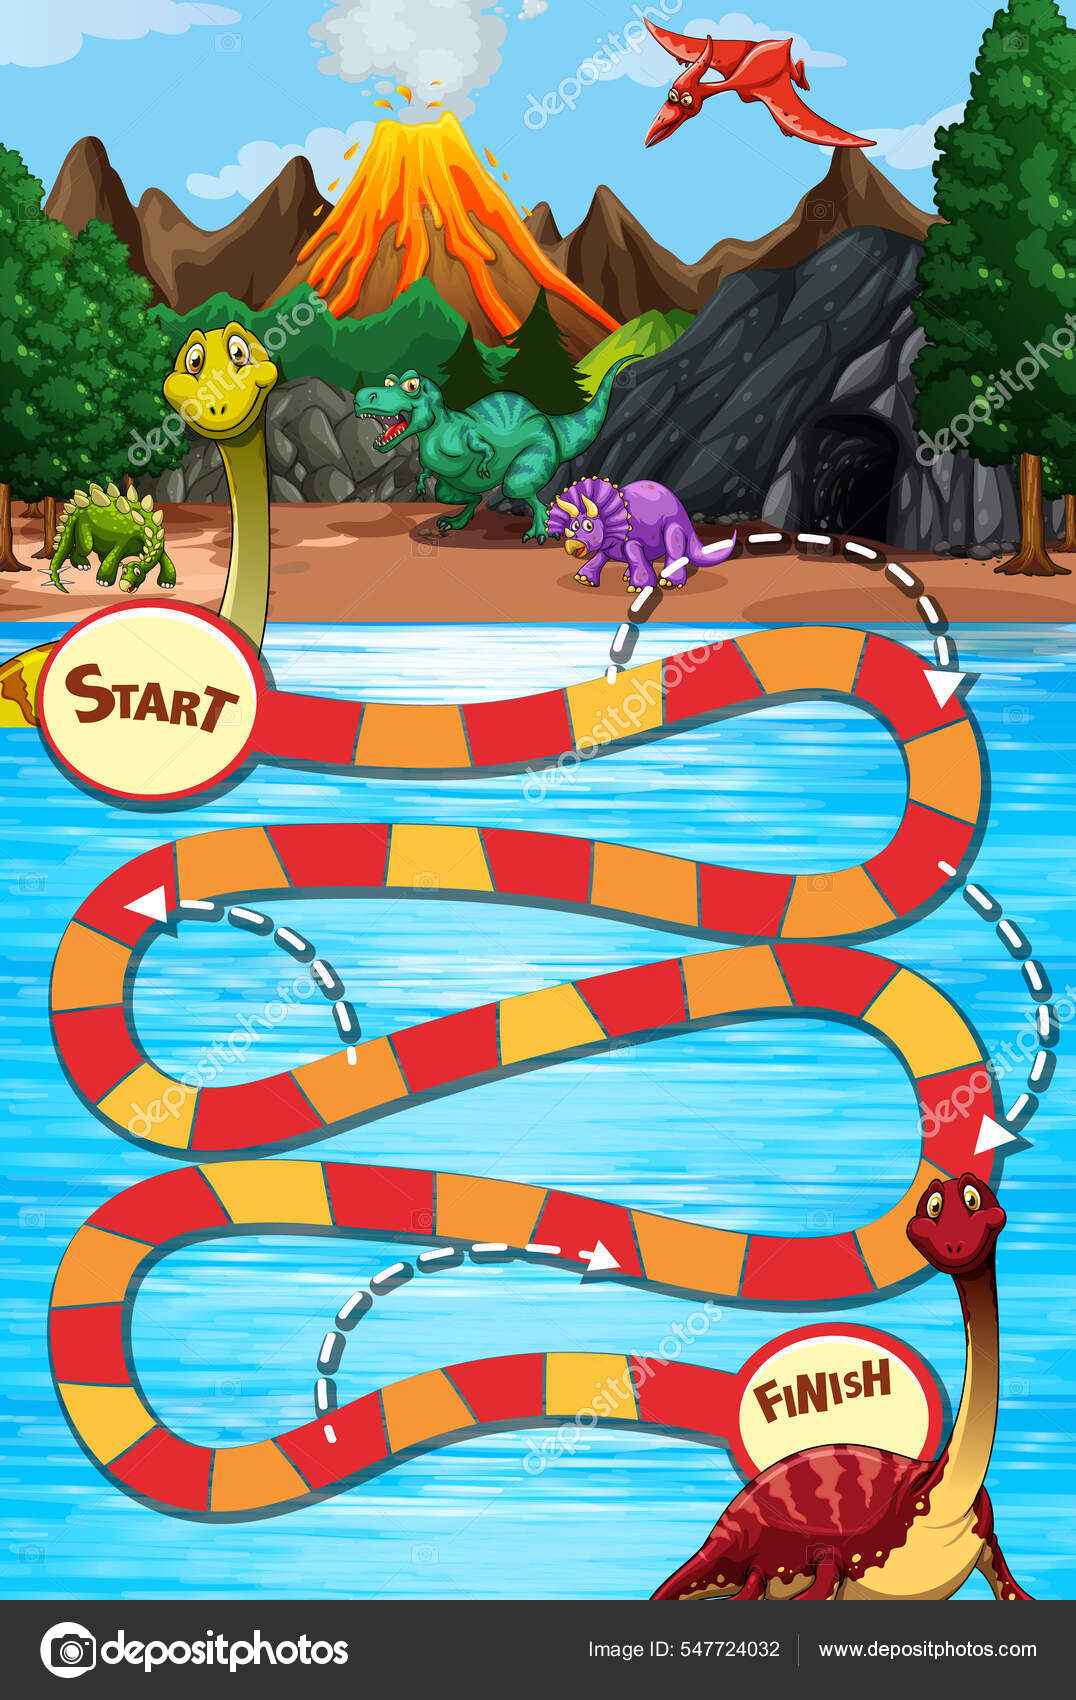 Modelo de jogo para cobra e escada com fundo de selva